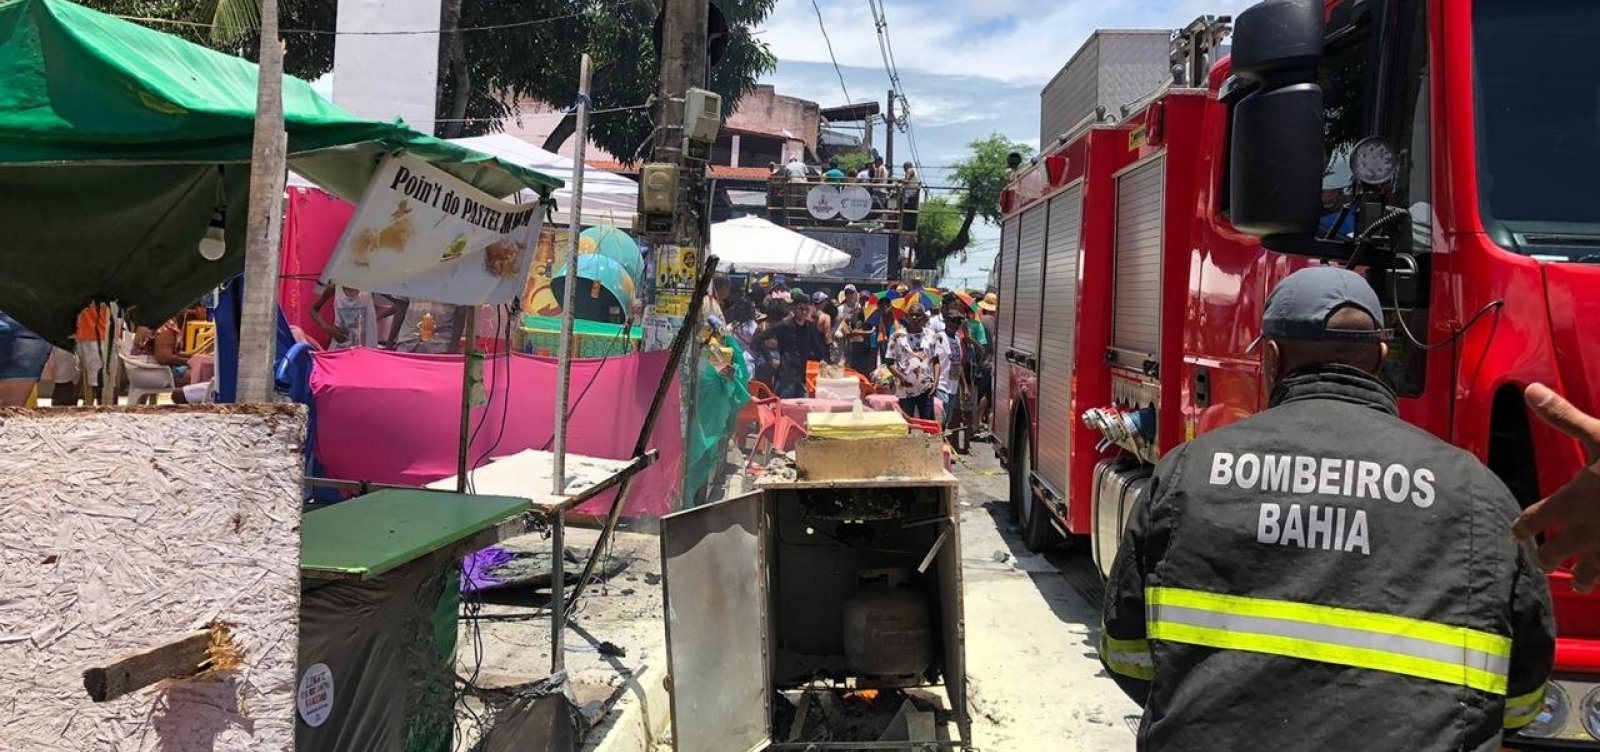 Mudança do Garcia: Carrinho de pastel pega fogo e bombeiros combatem incêndio